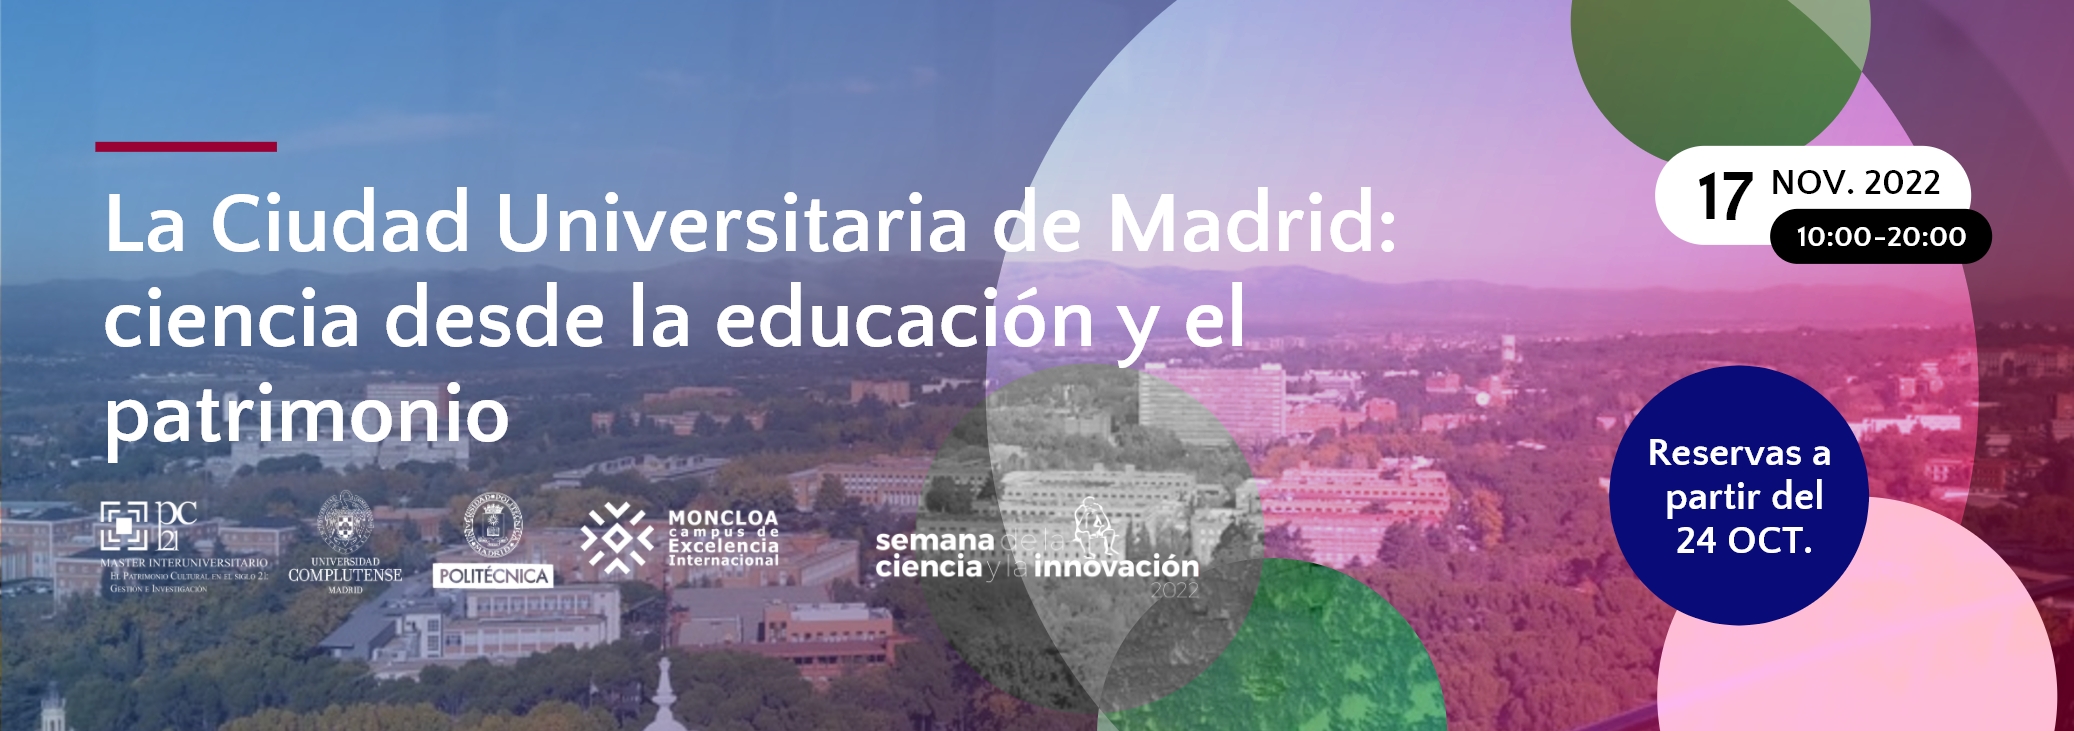 La Ciudad Universitaria de Madrid: ciencia desde la educación y el patrimonio